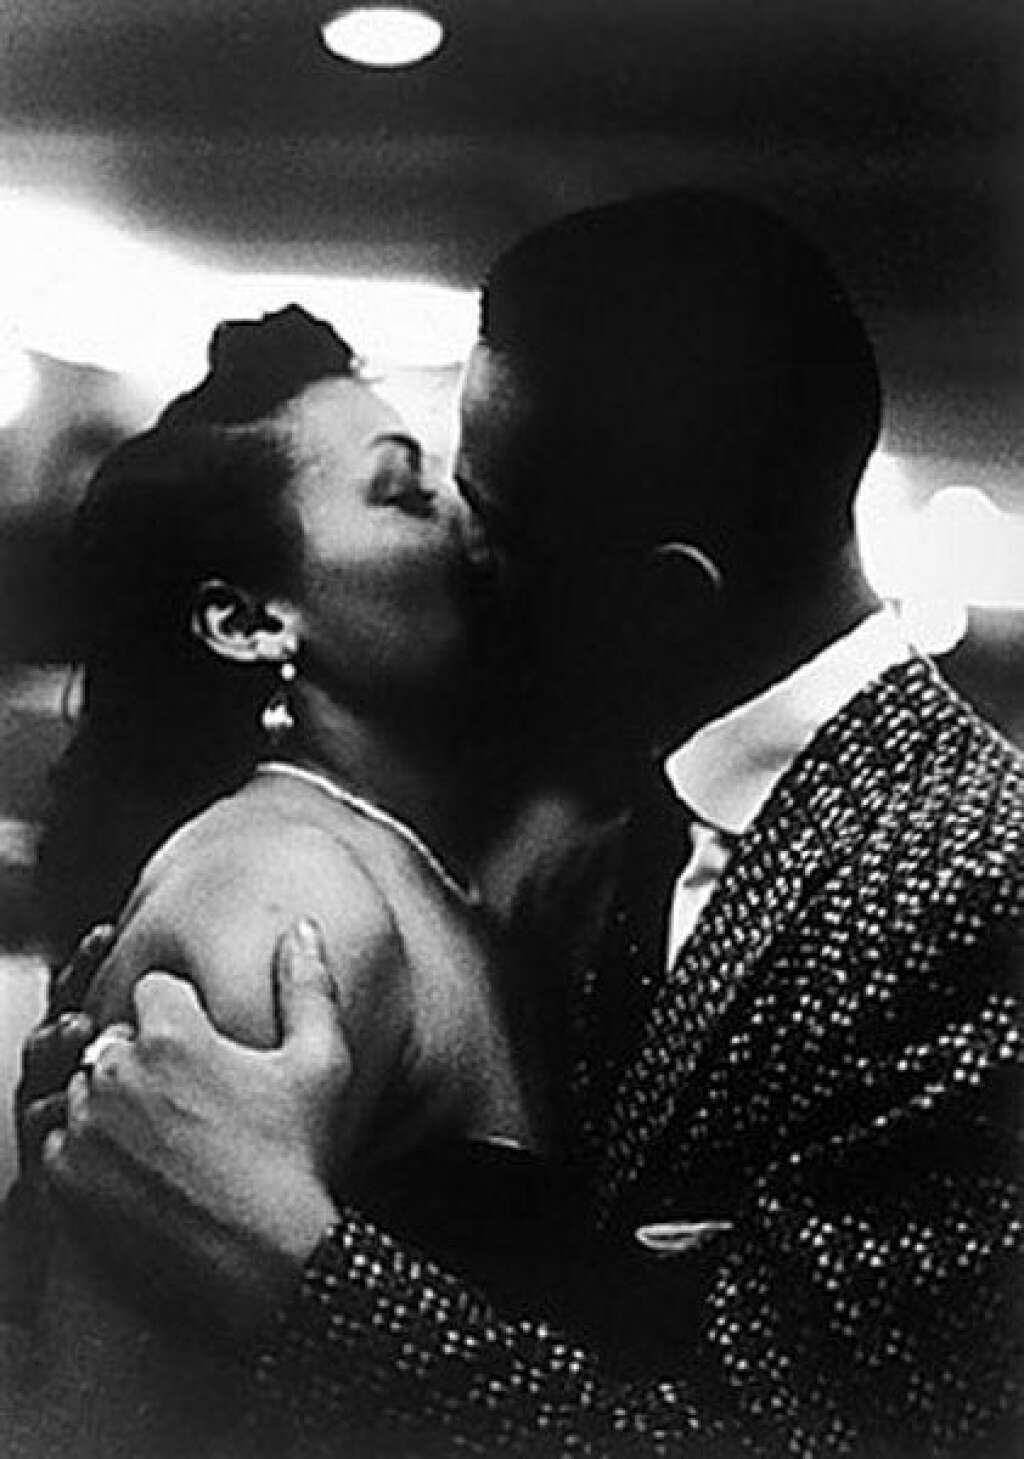 5- Le baiser du soir à Harlem de Zimbel - <a href="http://georgezimbel.com/">Le site officiel de George S. Zimbel</a>